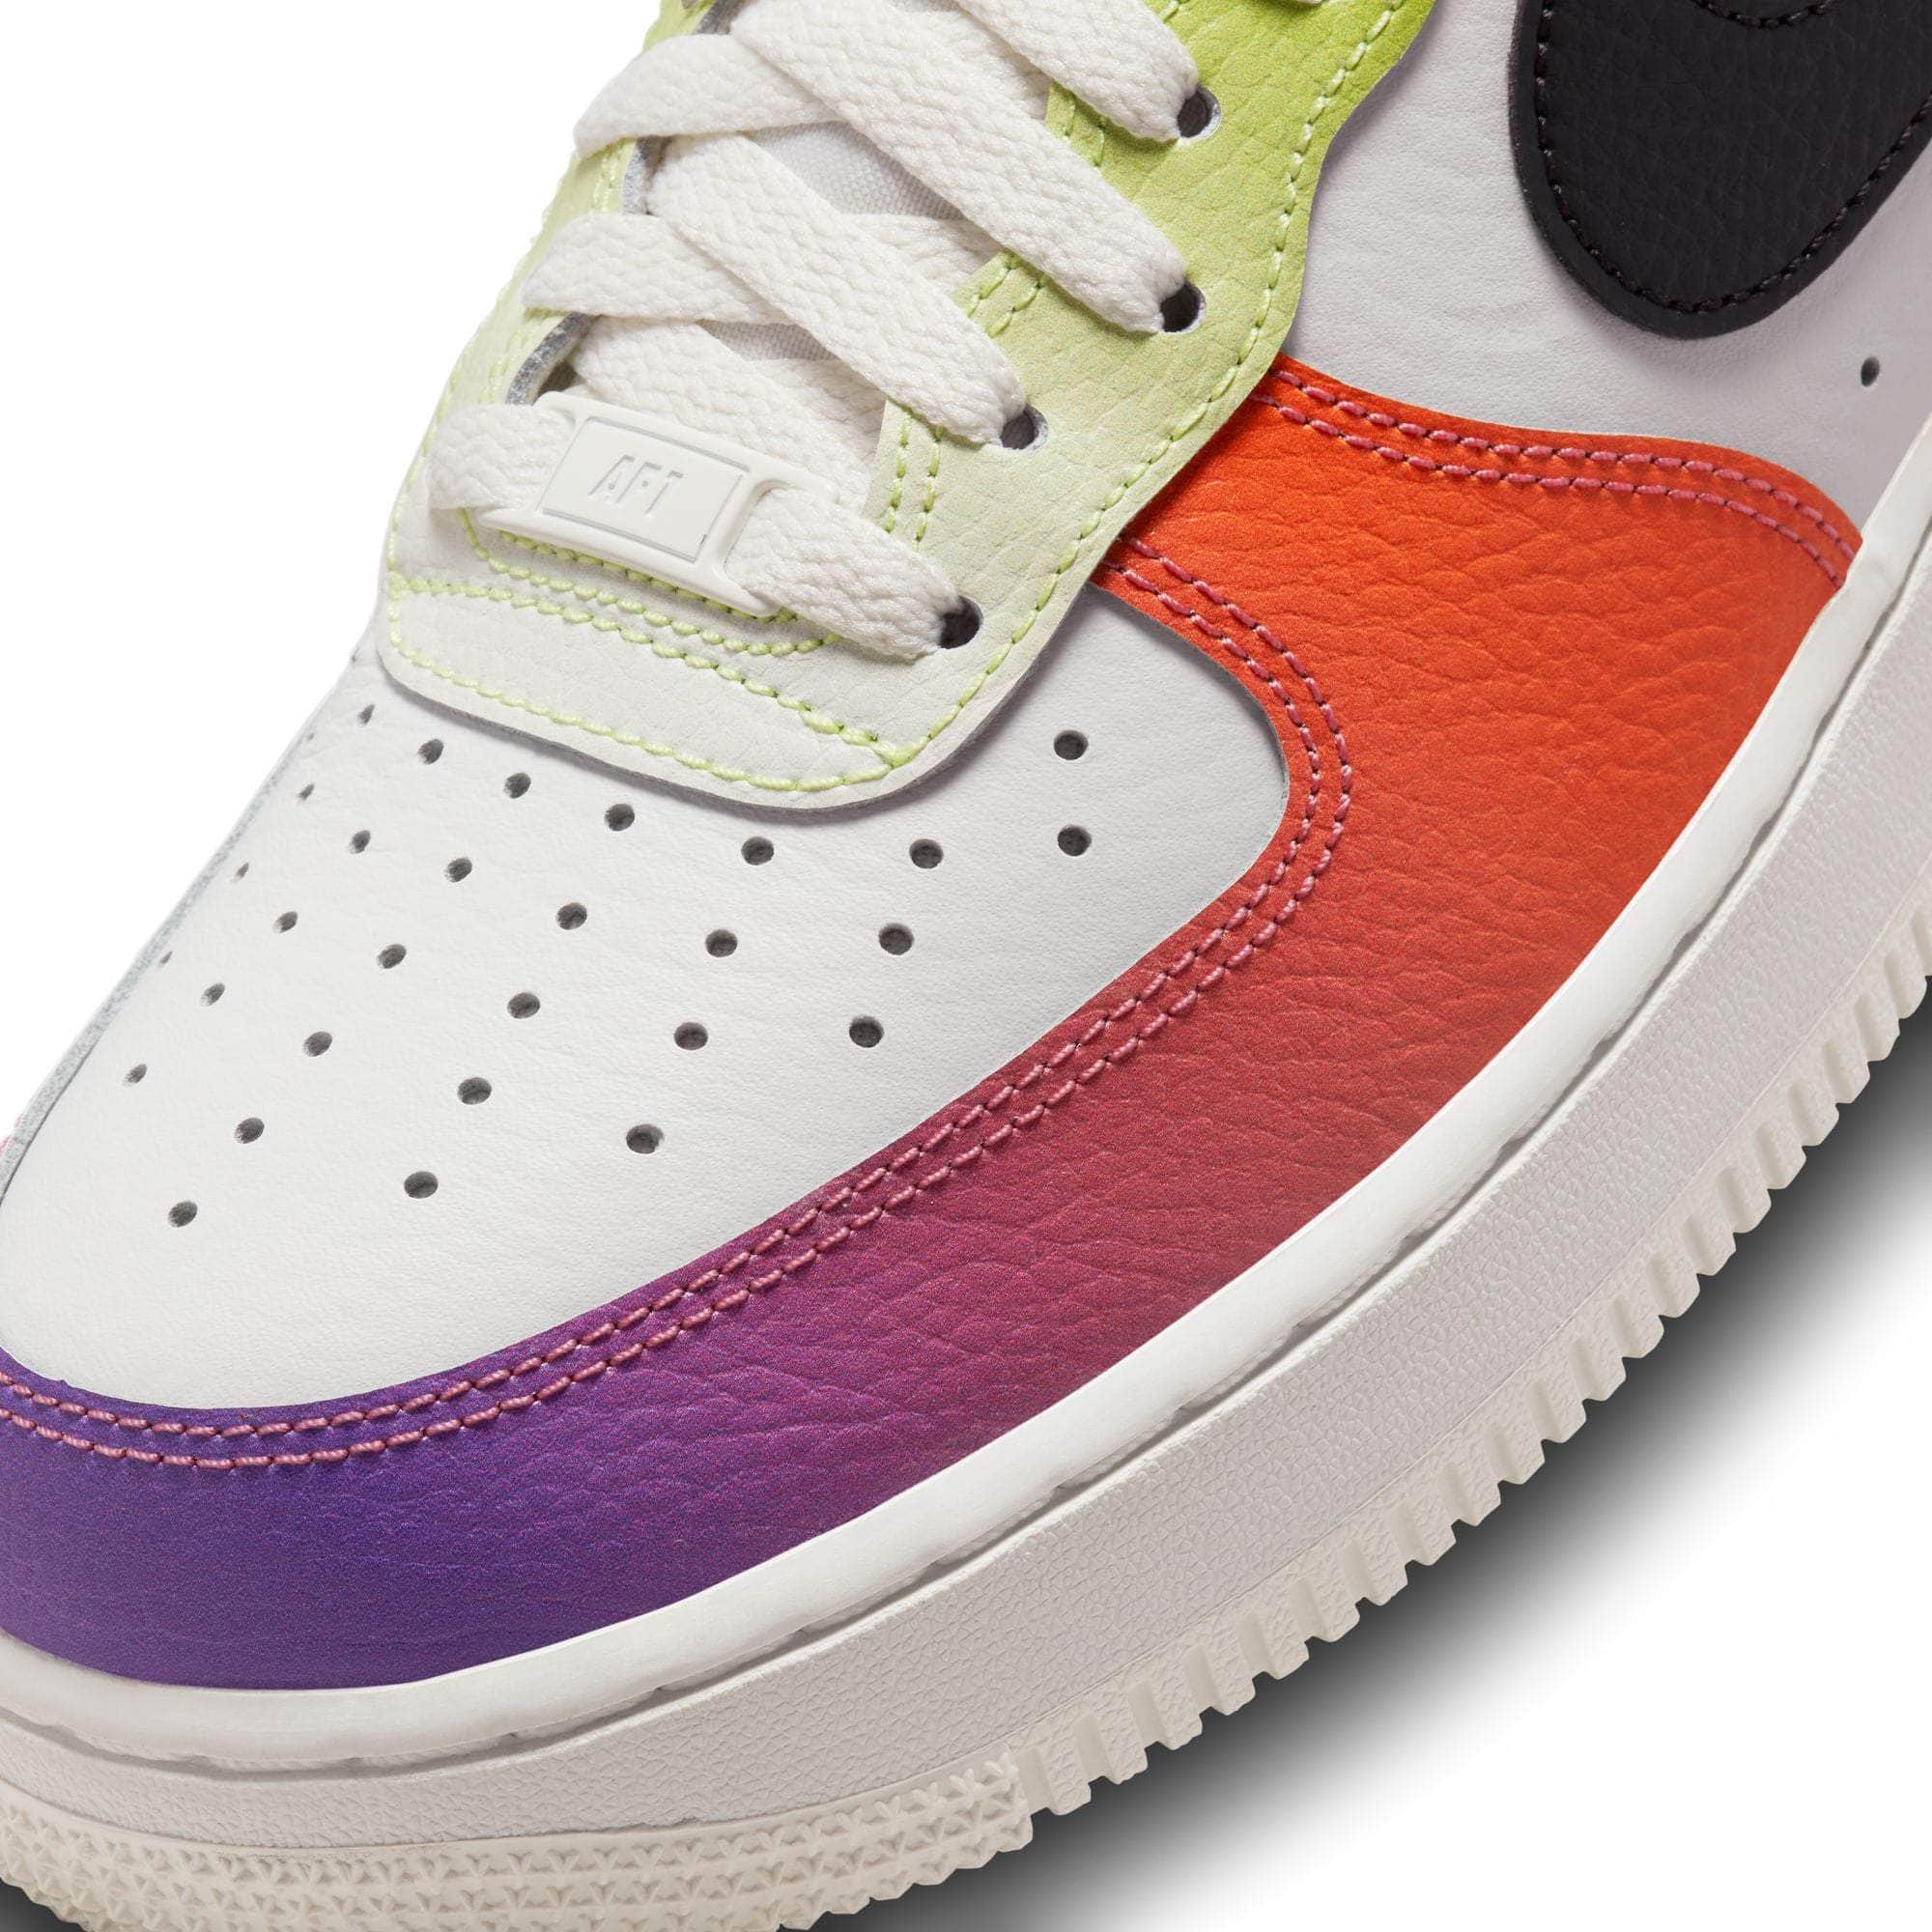 NIKE FOOTWEAR Nike Air Force 1 Low '07 Multi-Color Gradient - Women's